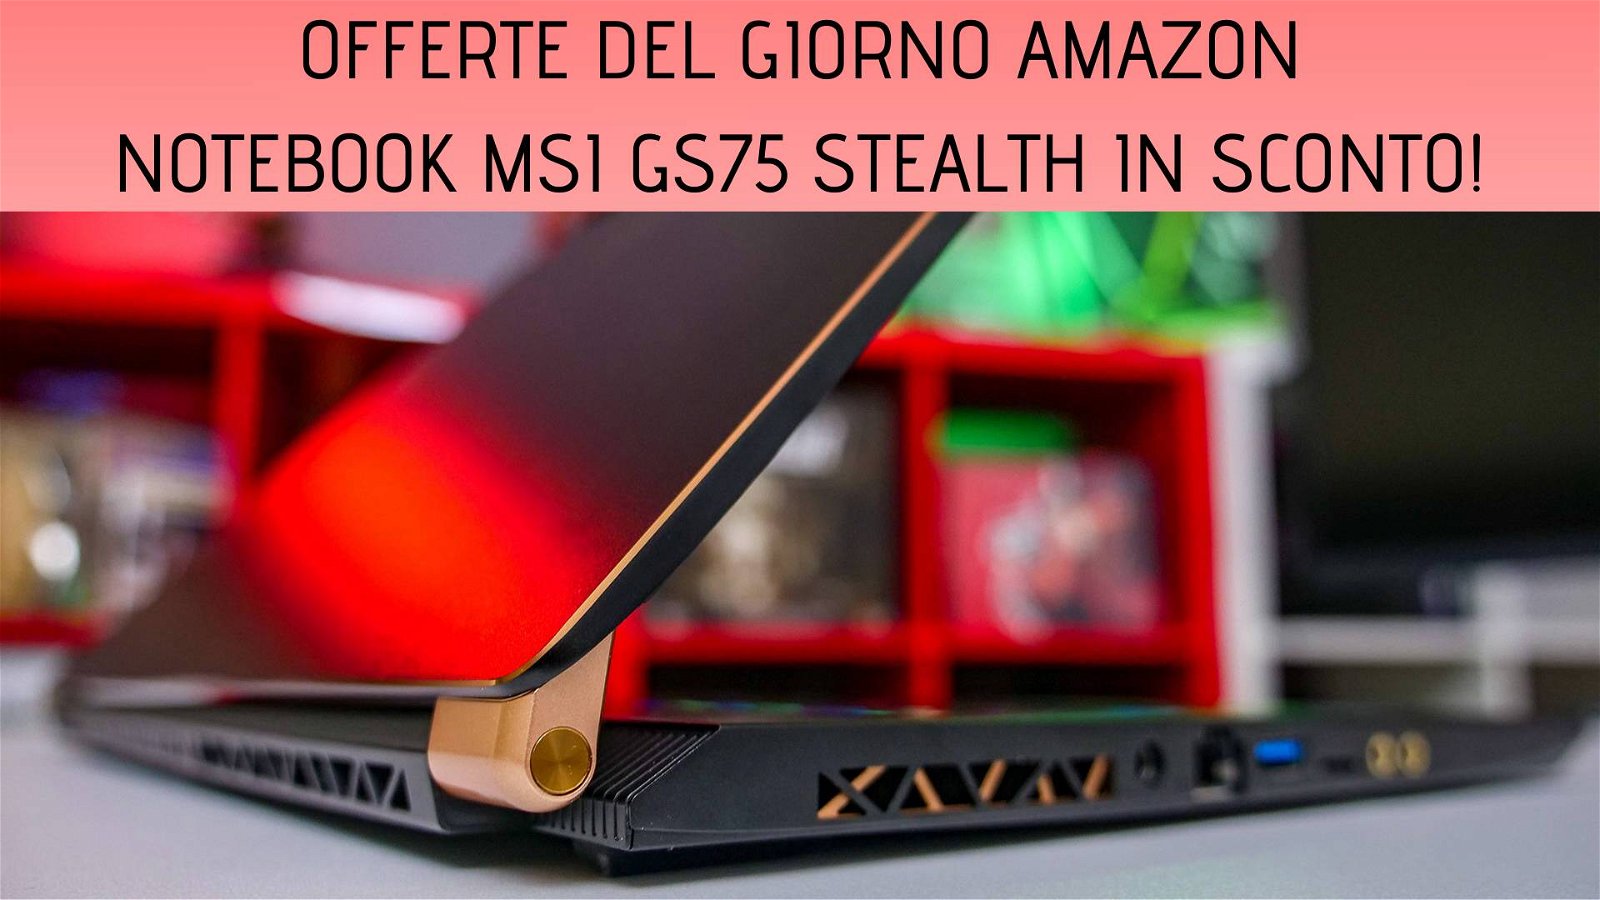 Immagine di Offerte del giorno Amazon: notebook MSI GS75 Stealth in sconto di 400€!